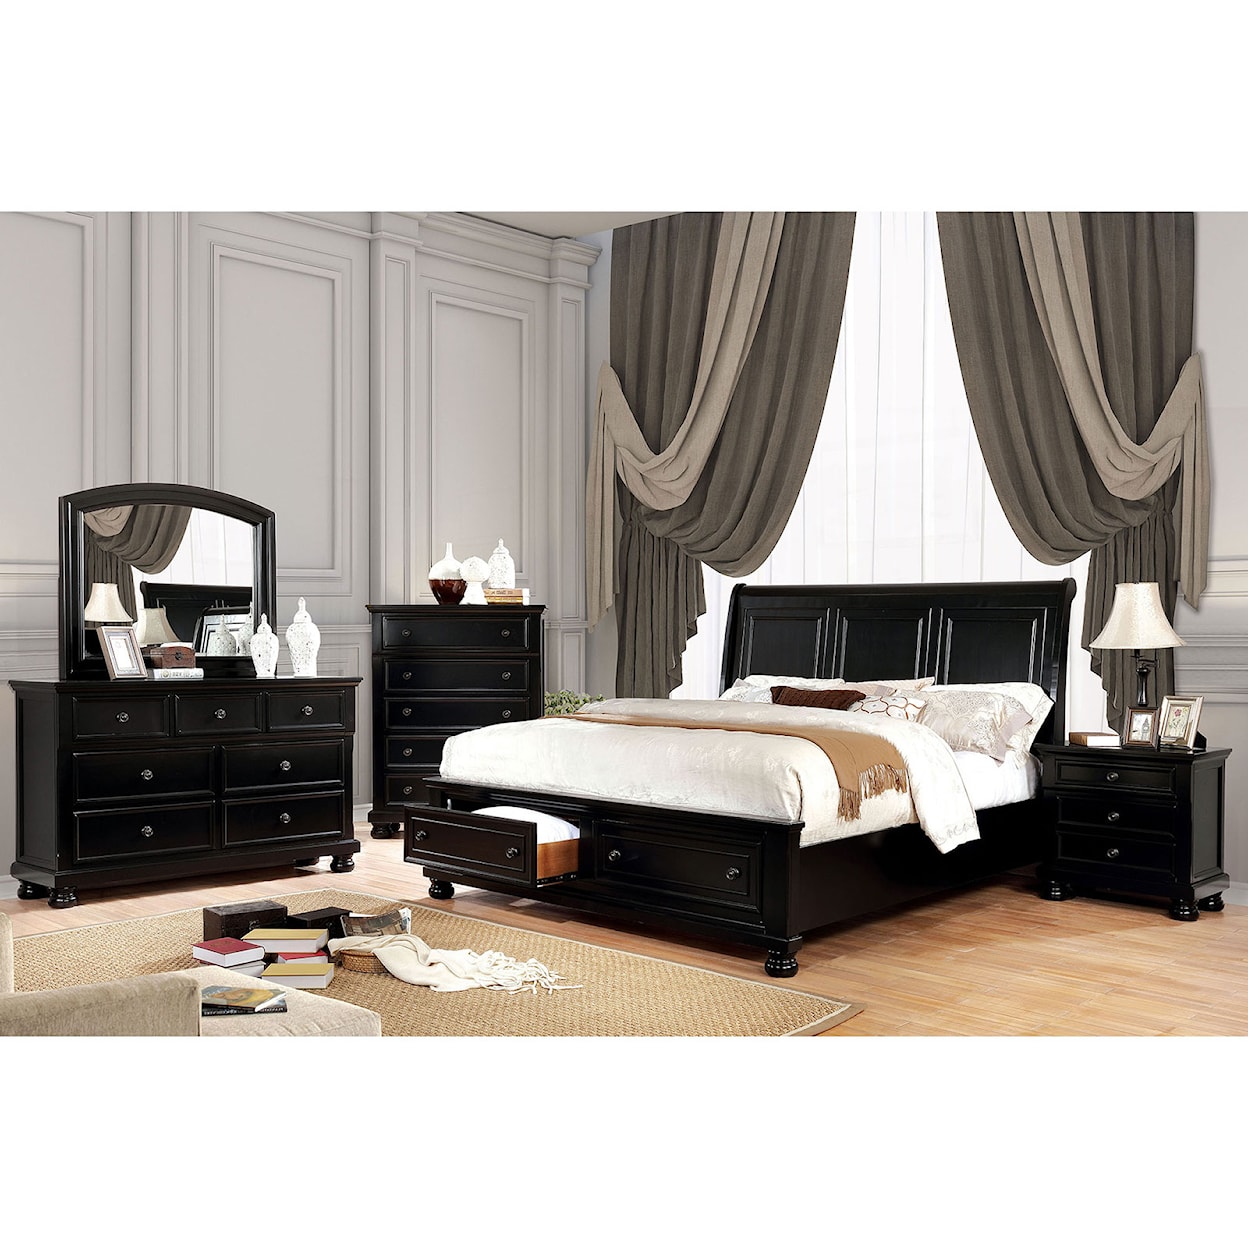 Furniture of America Castor King Bedroom Set